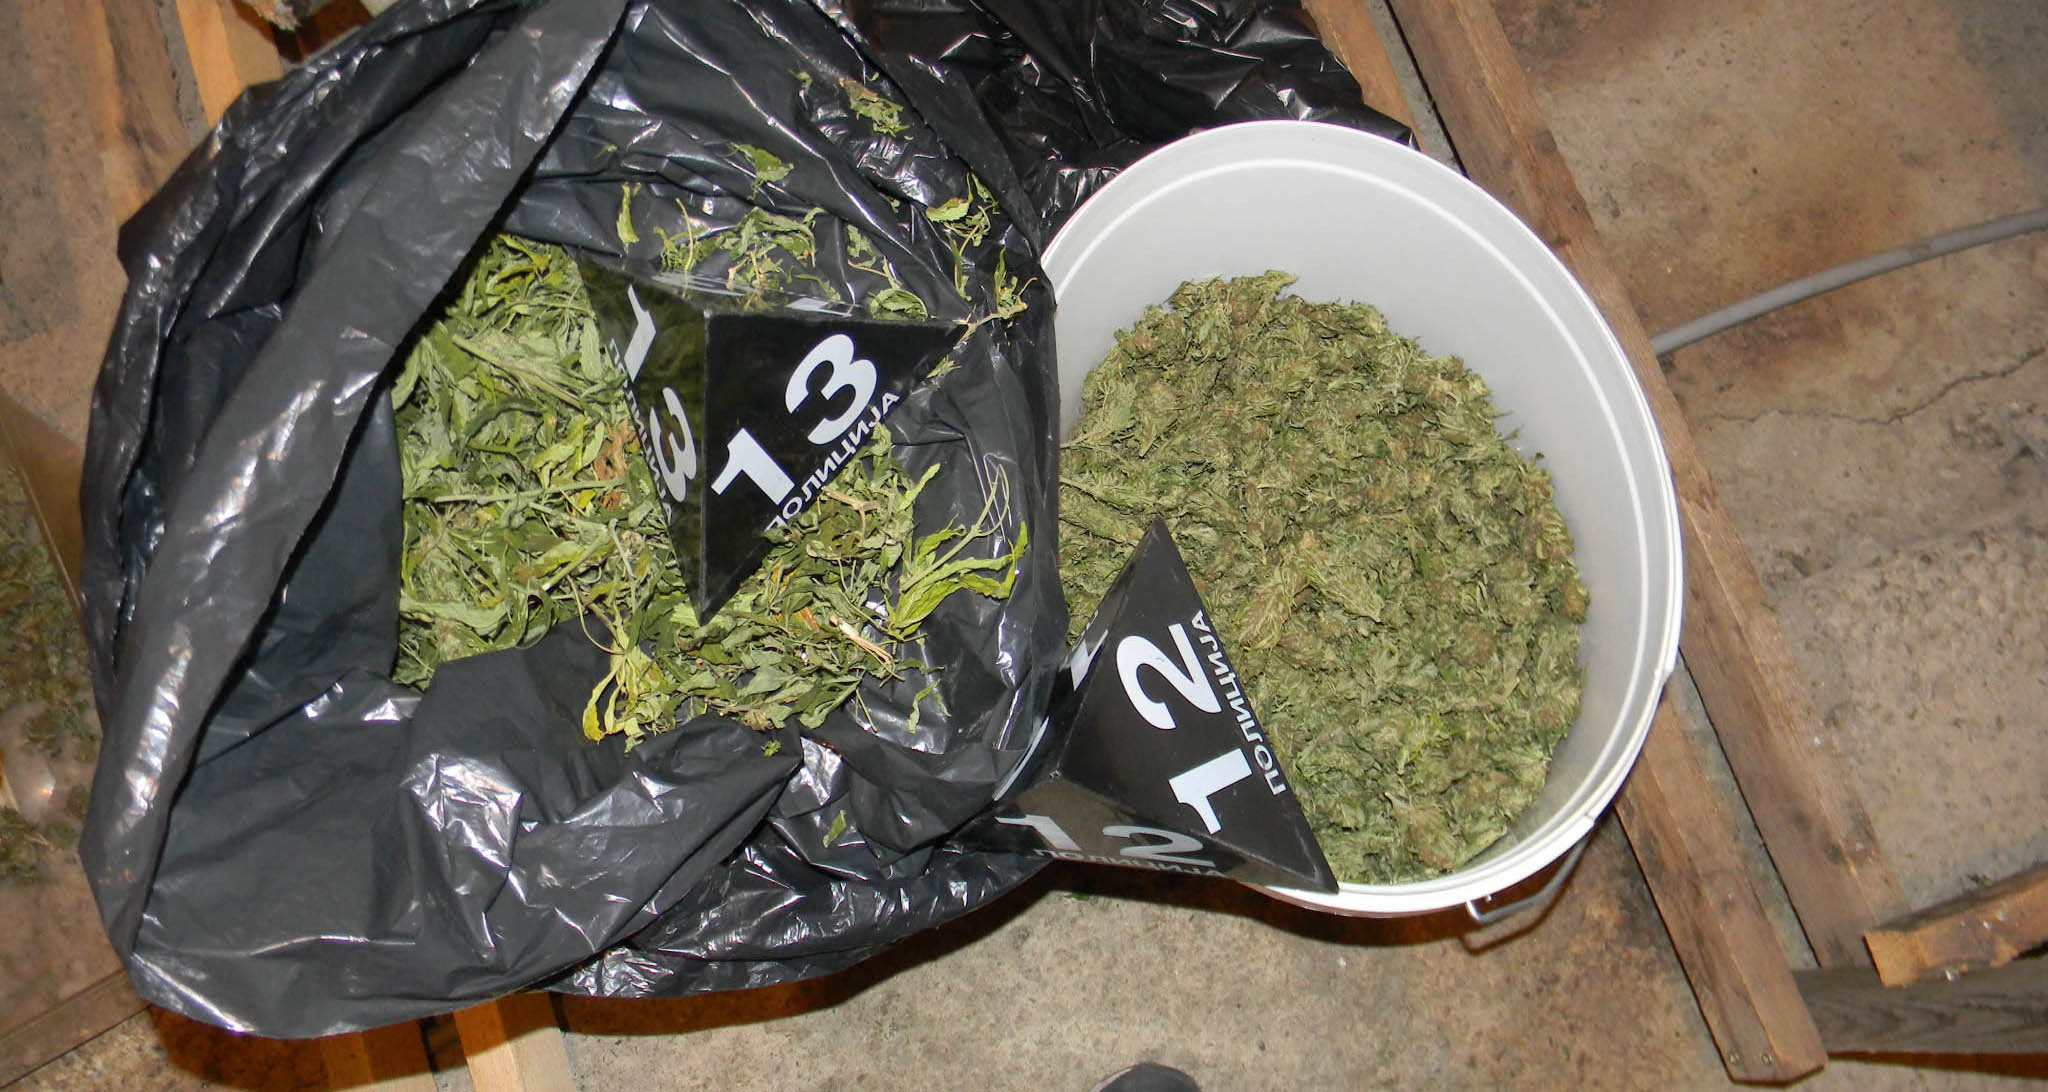 U Nišu zaplenjeno 90 kilograma marihuane, uhapšena jedna osoba